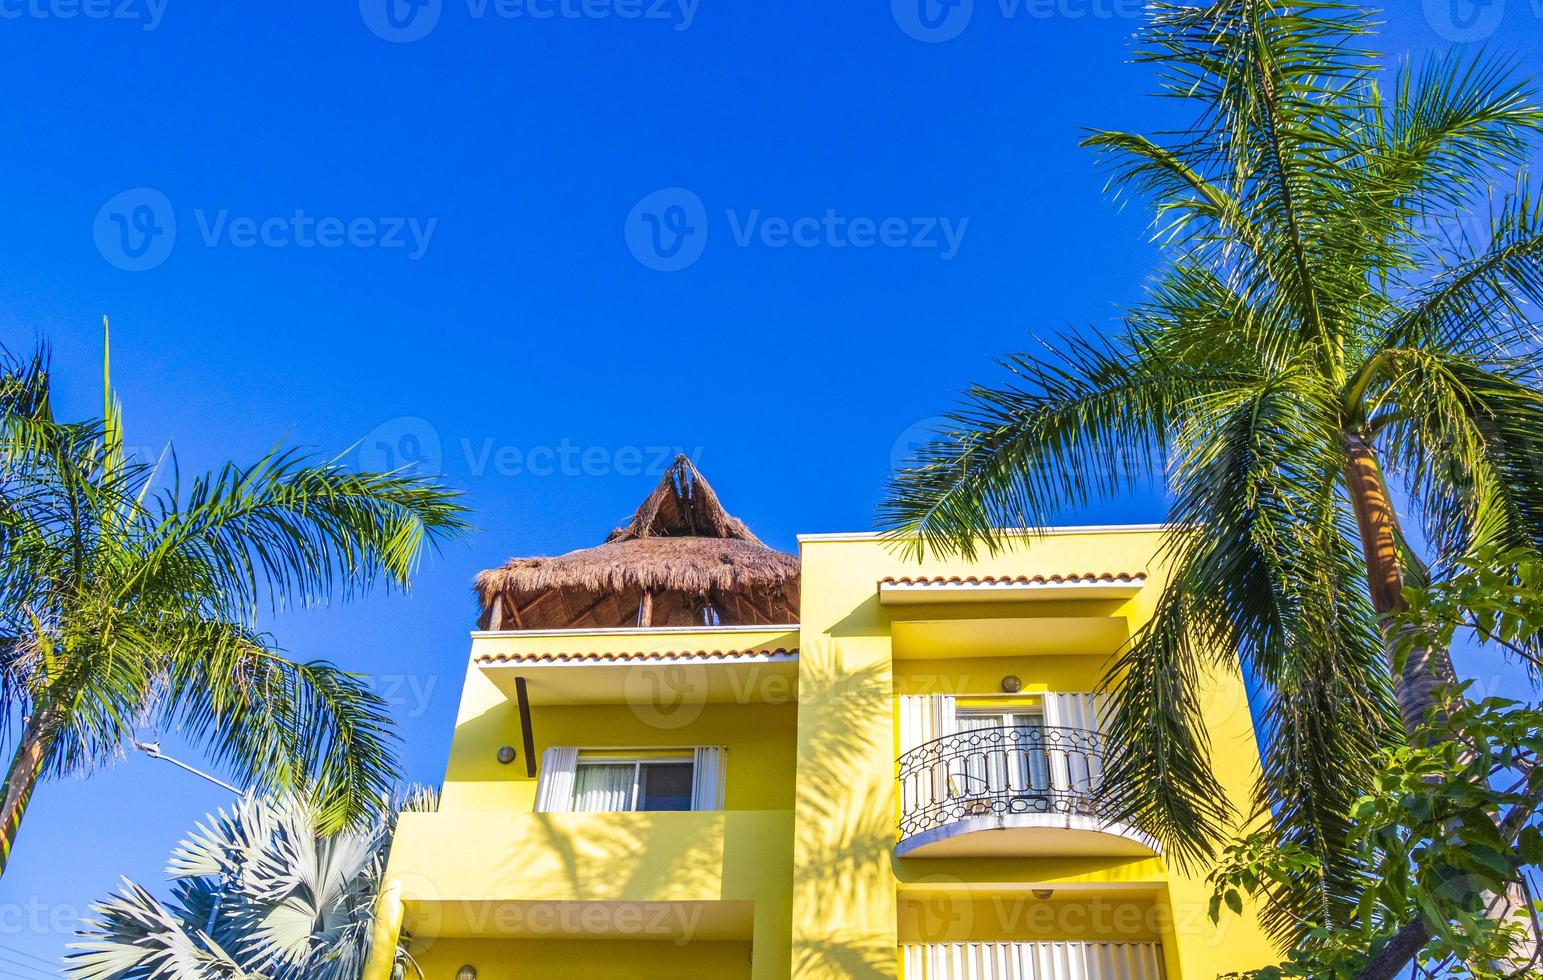 Típica residencia amarilla edificio de condominios hotel playa del carmen mexico. foto